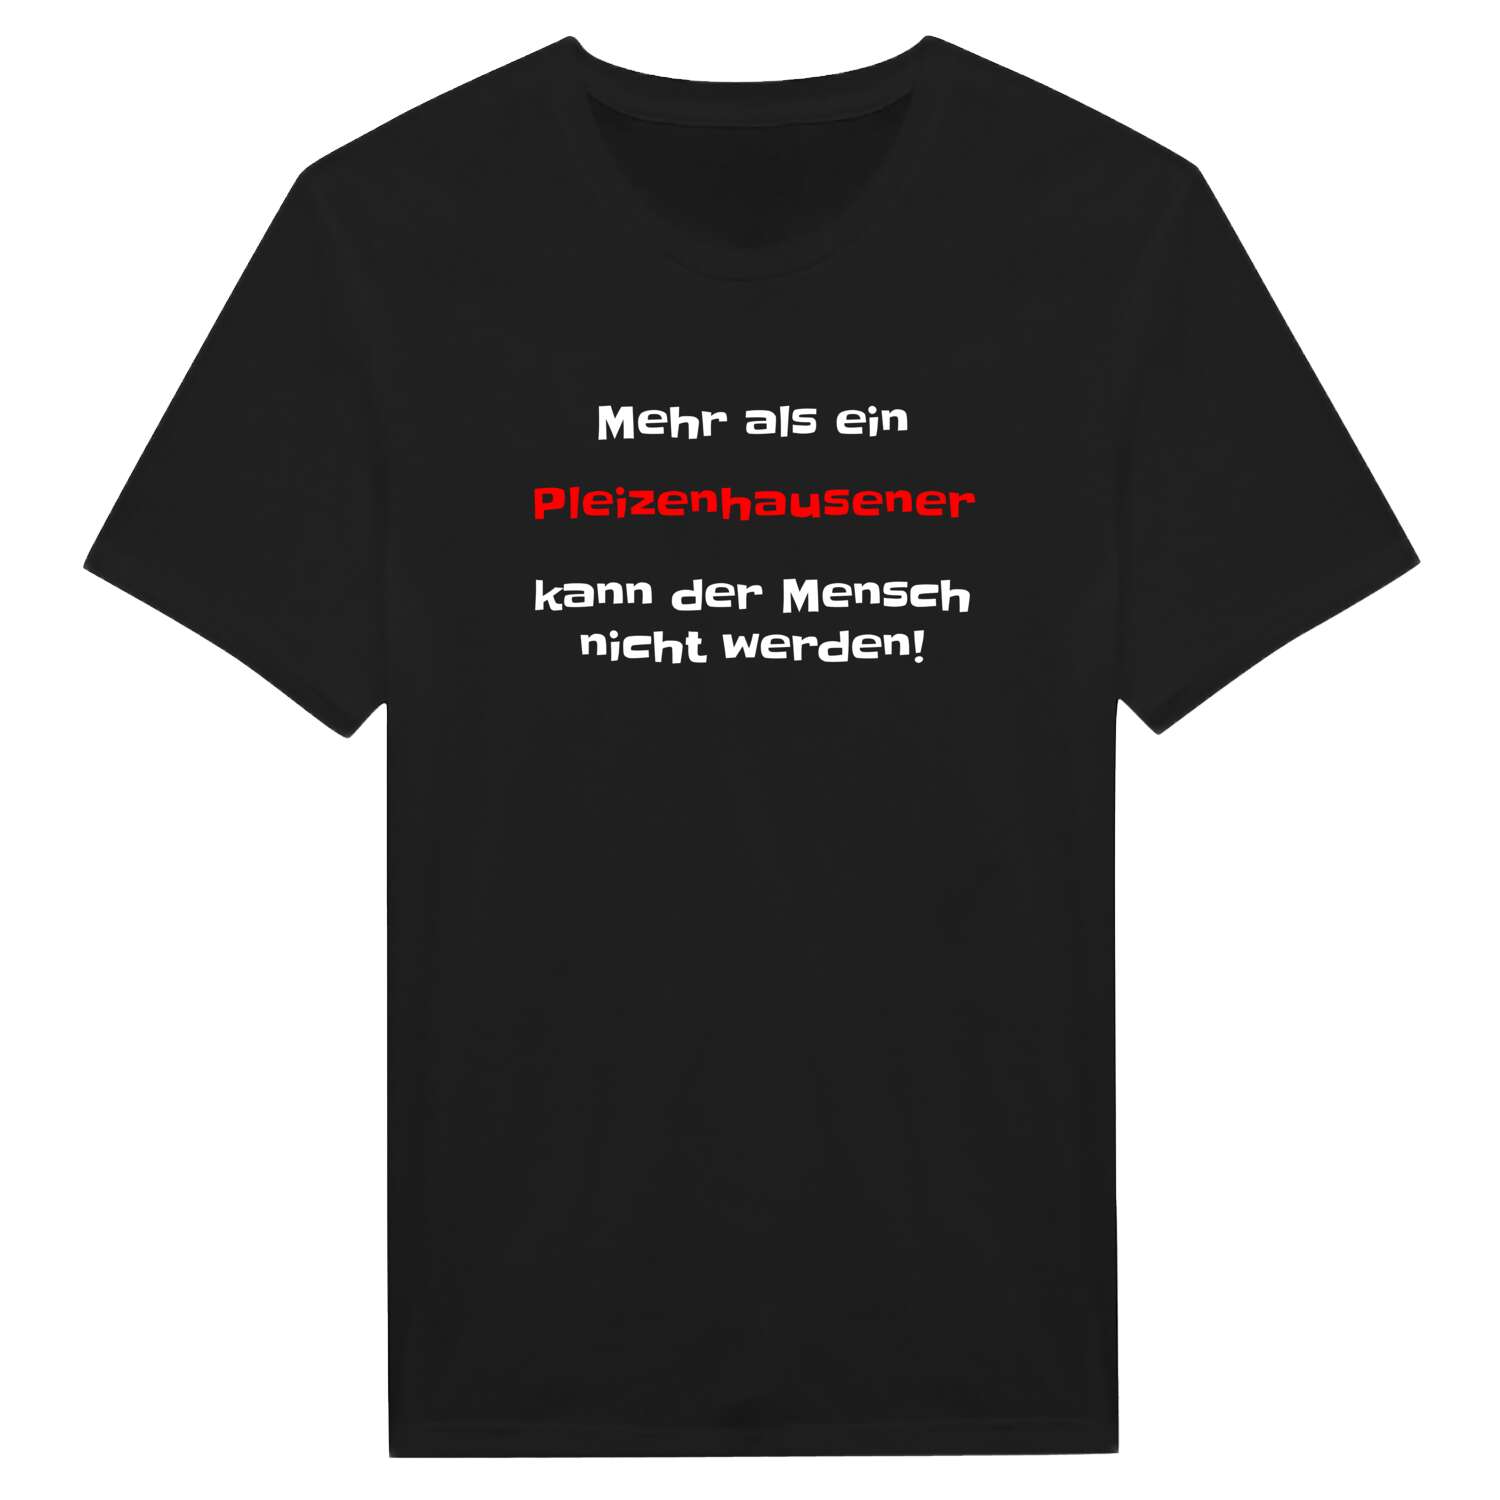 Pleizenhausen T-Shirt »Mehr als ein«